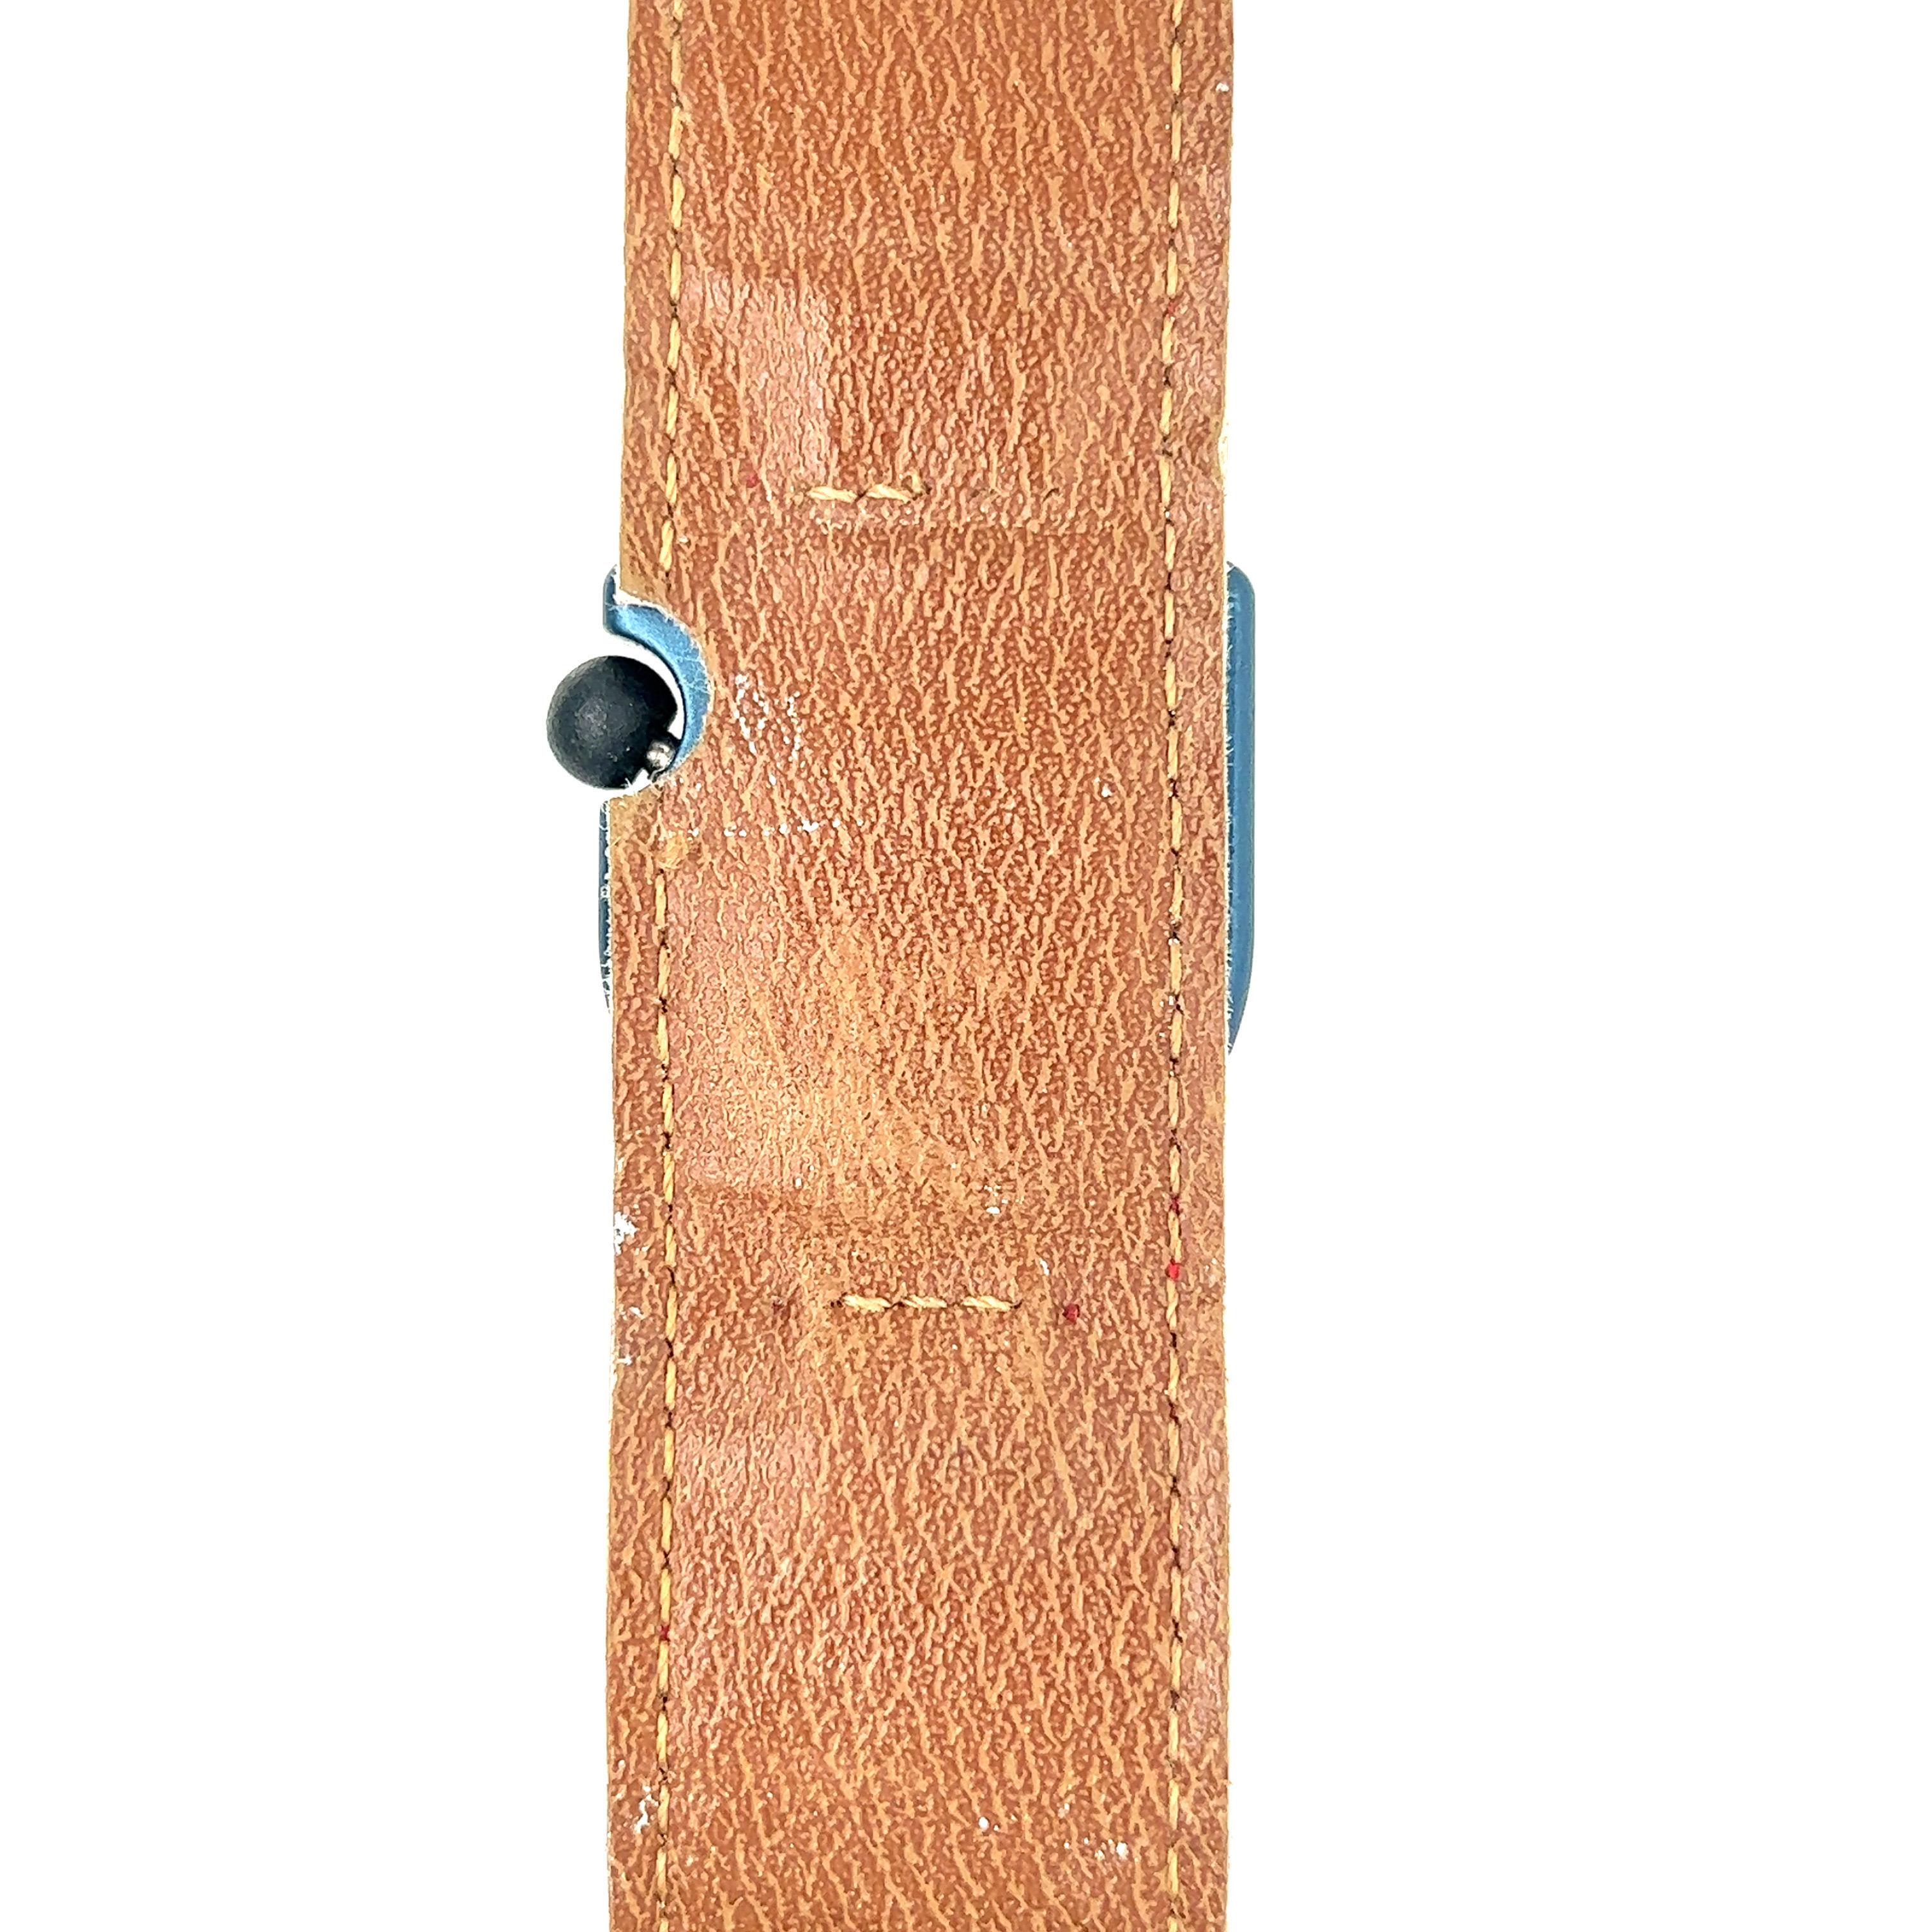 Montre LIP pour femmes, bracelet fuchsia, boîtier bleu

Cette montre LIP Tallon pour femme, modèle patch, est une pièce vintage de 1970 avec un bracelet original en cuir rose Fushia, un mouvement mécanique T13 de haute qualité, un boîtier bleu